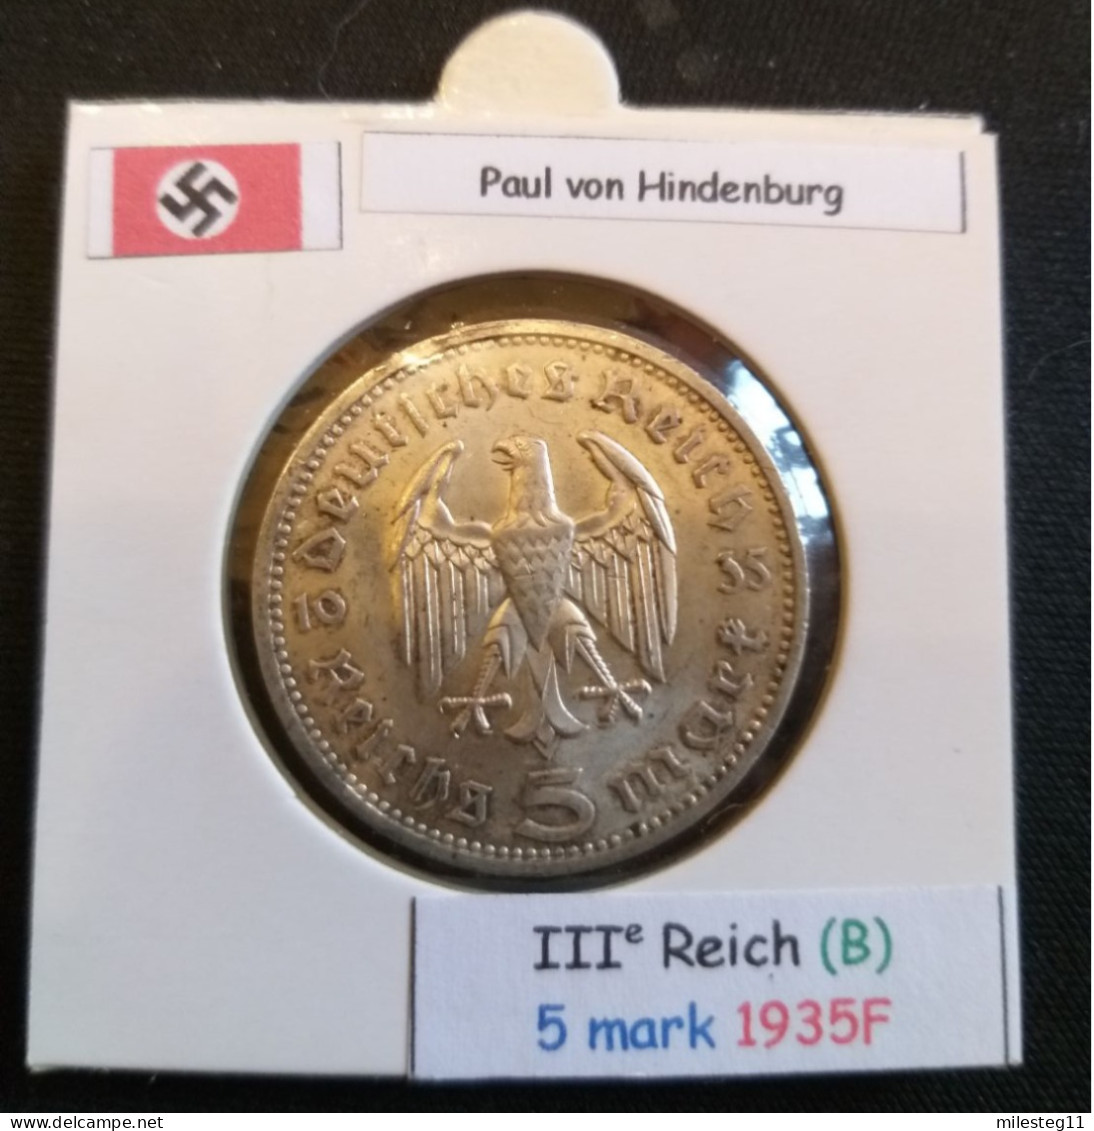 Pièce De 5 Reichsmark De 1935F (Stuttgard) Paul Von Hindenburg (position B) - 5 Reichsmark